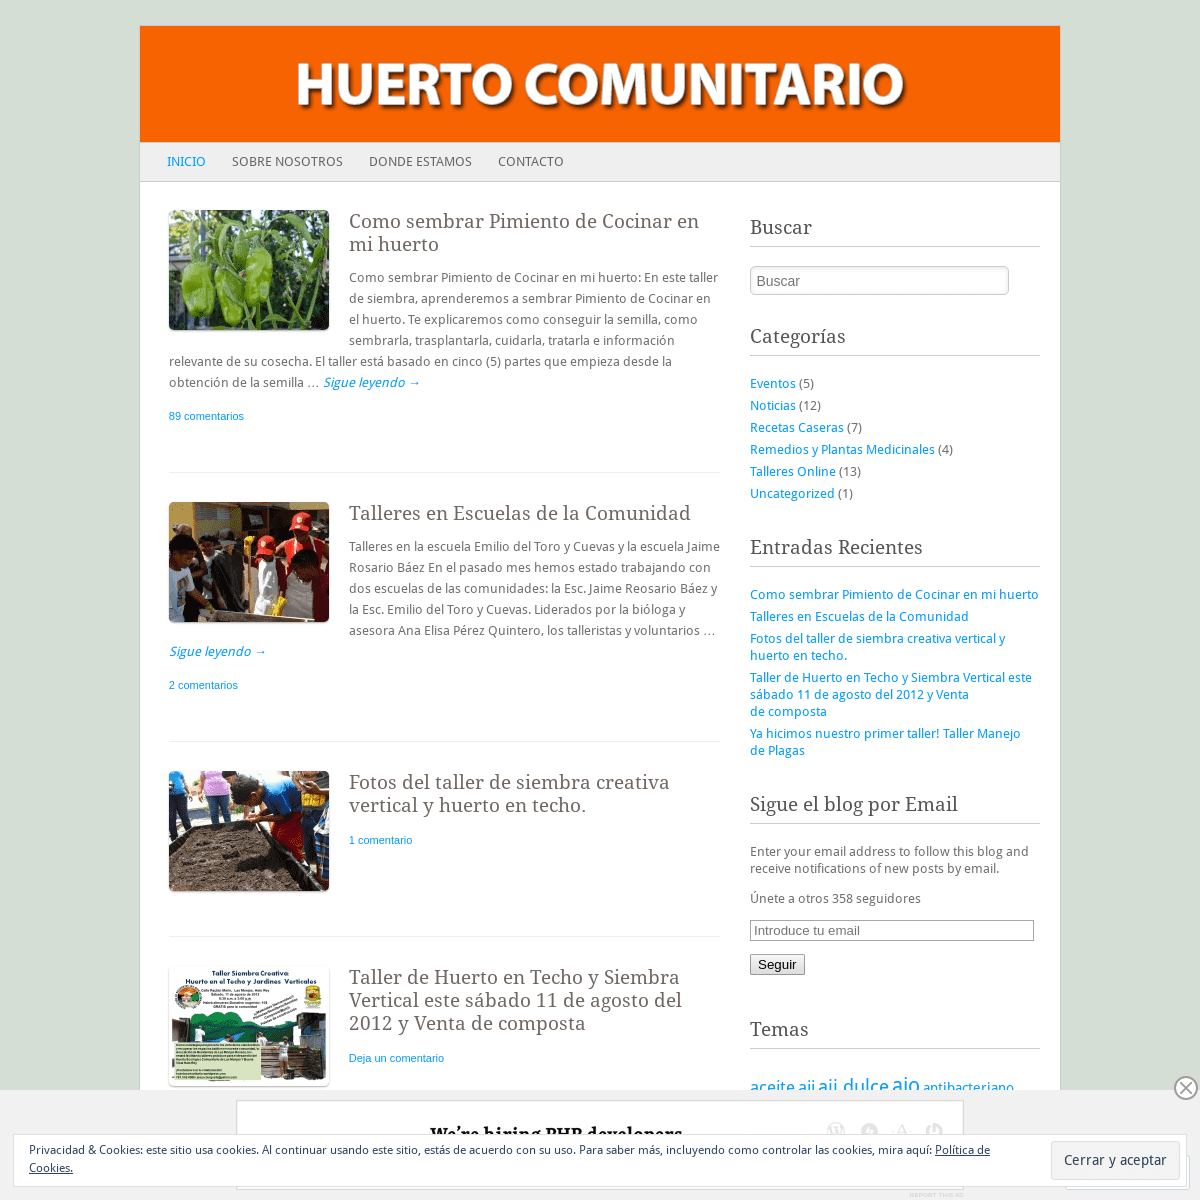 A complete backup of huertocomunitario.wordpress.com